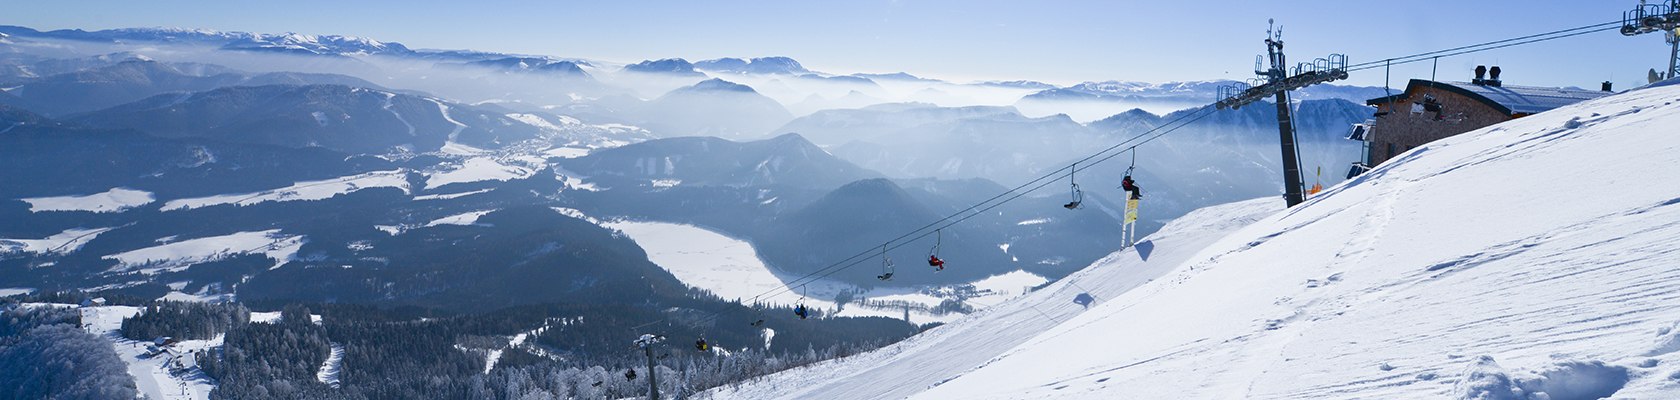 Winterpanorama der Gemeindealpe Mitterbach, © Bergbahnen Mitterbach/Leiminger